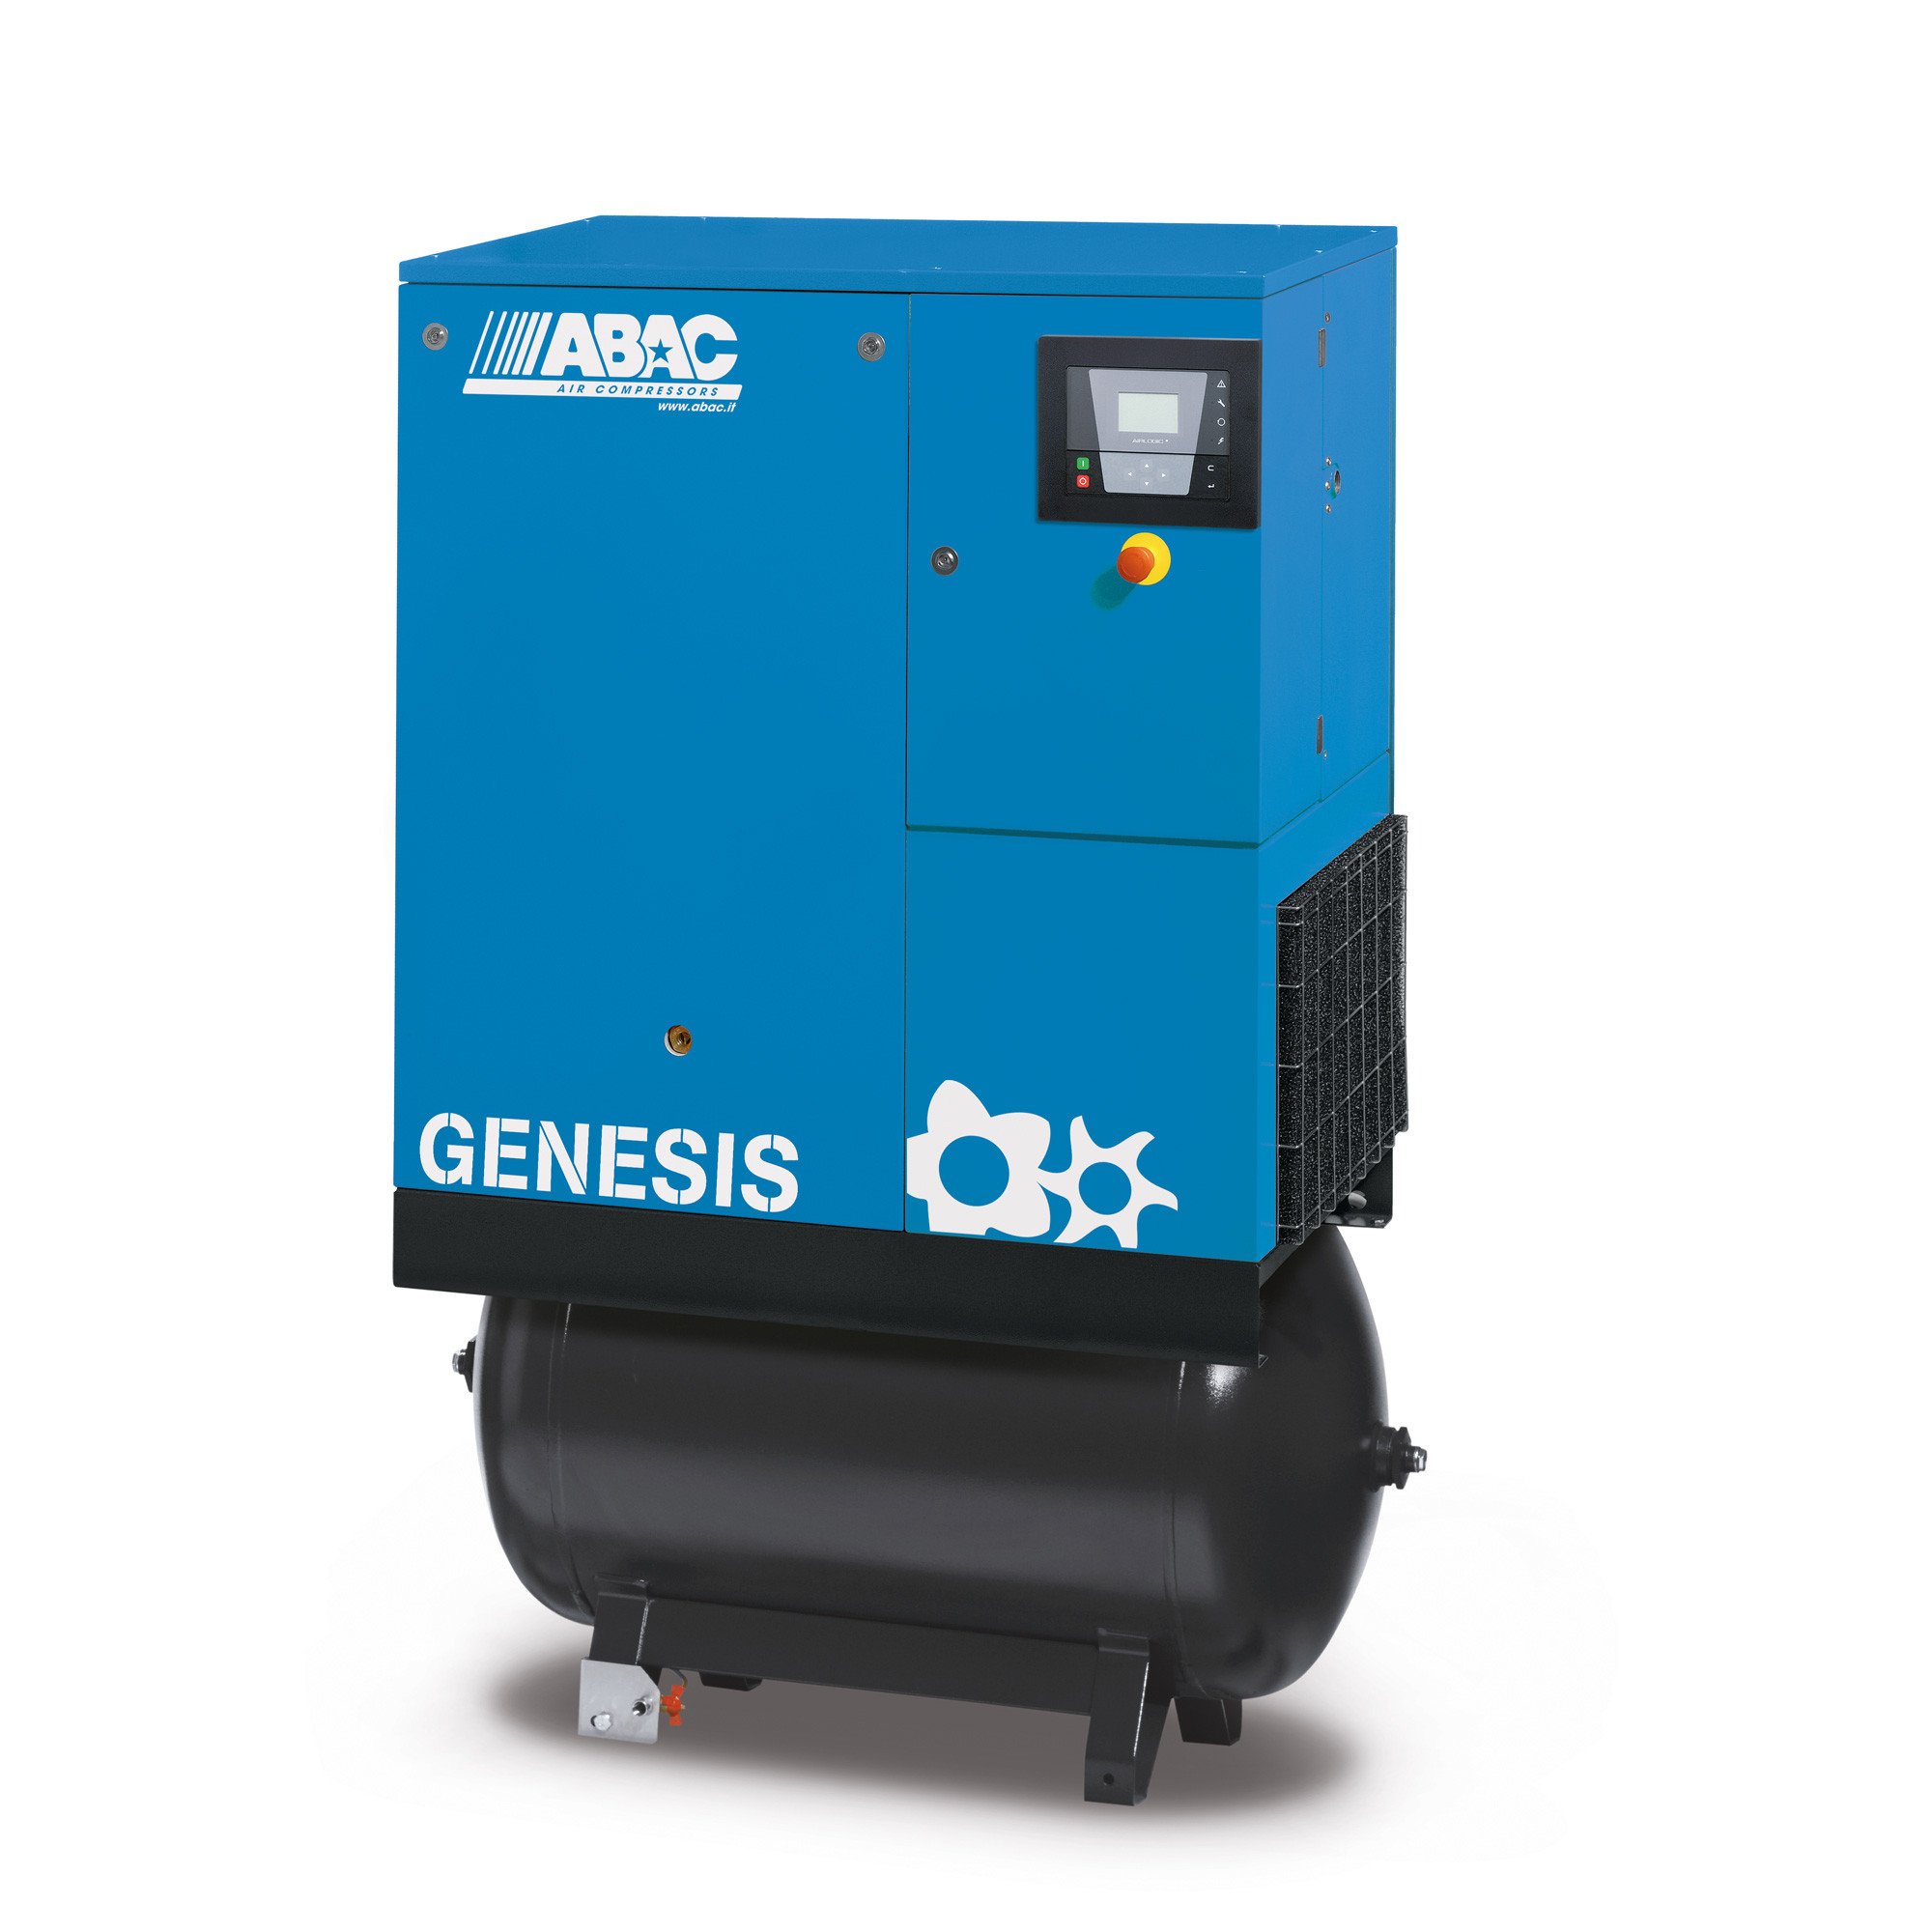 Abac Genesis 270L 11 kW固定速螺钉空气压缩机